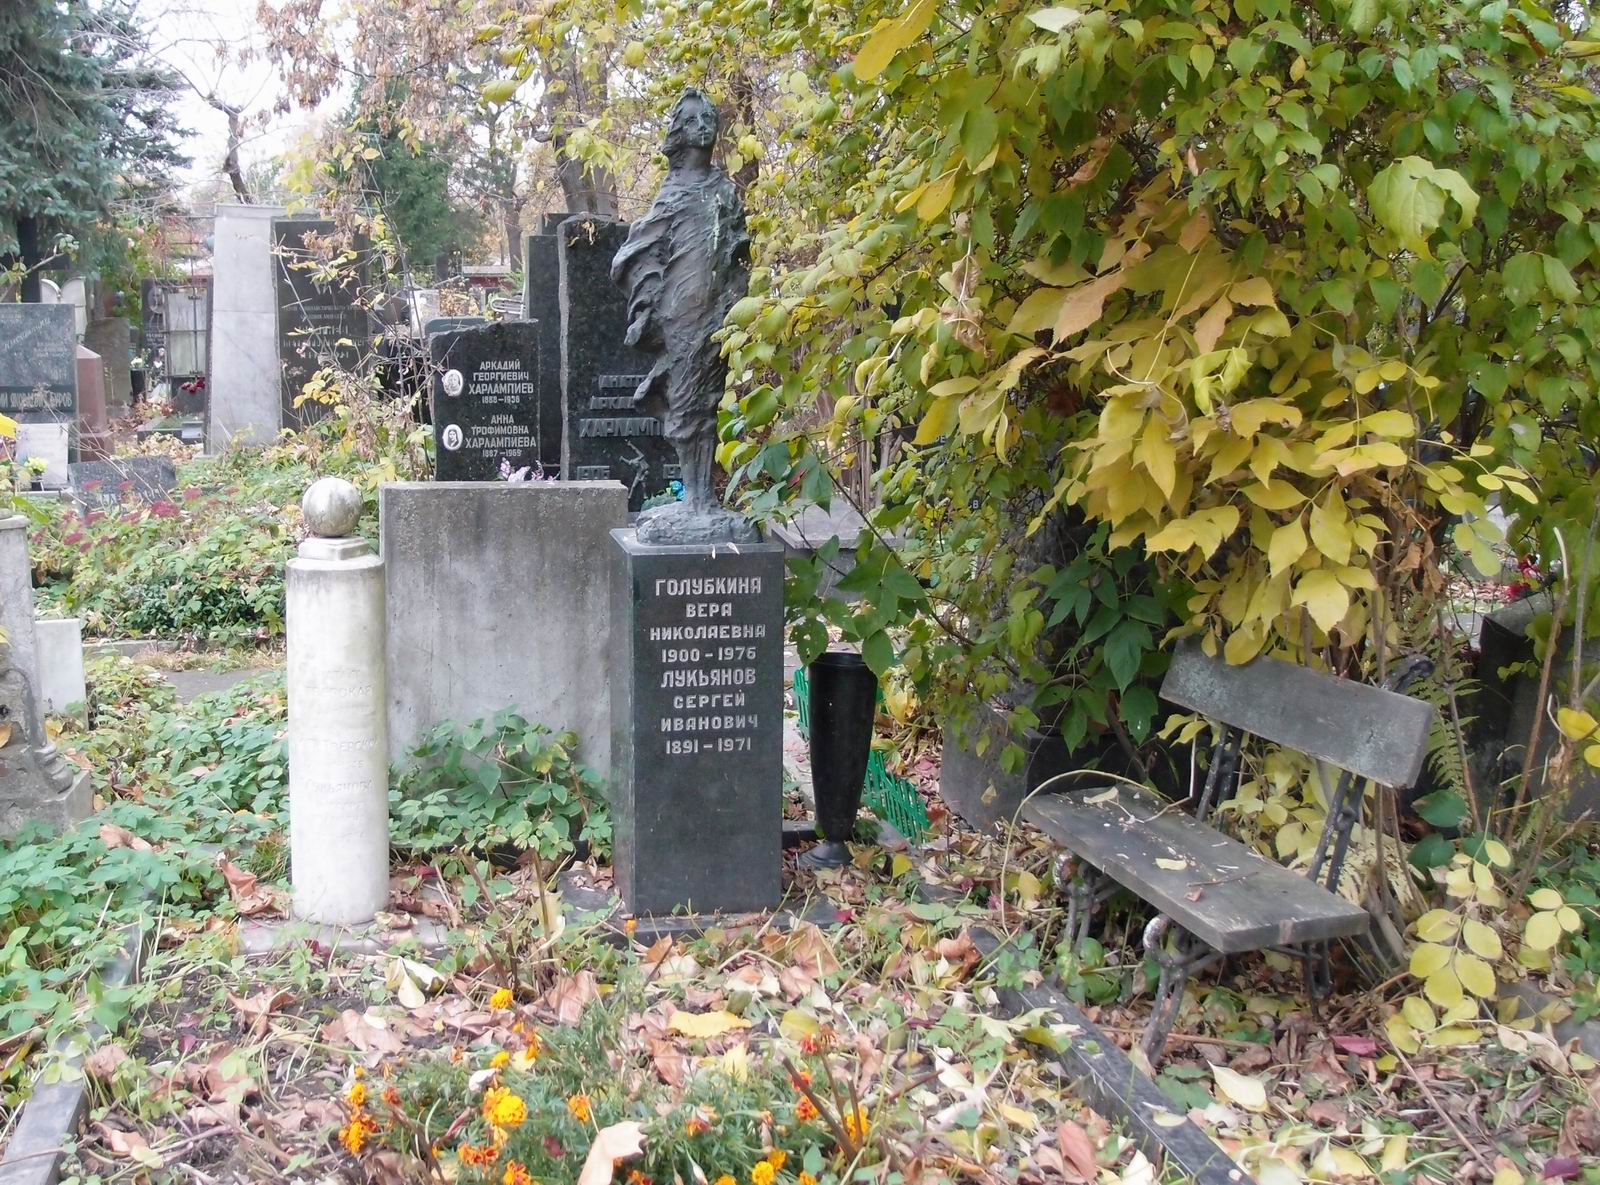 Памятник на могиле Голубкиной В.Н. (1900-1976), ск. А.Голубкина, на Новодевичьем кладбище (4-32-18).